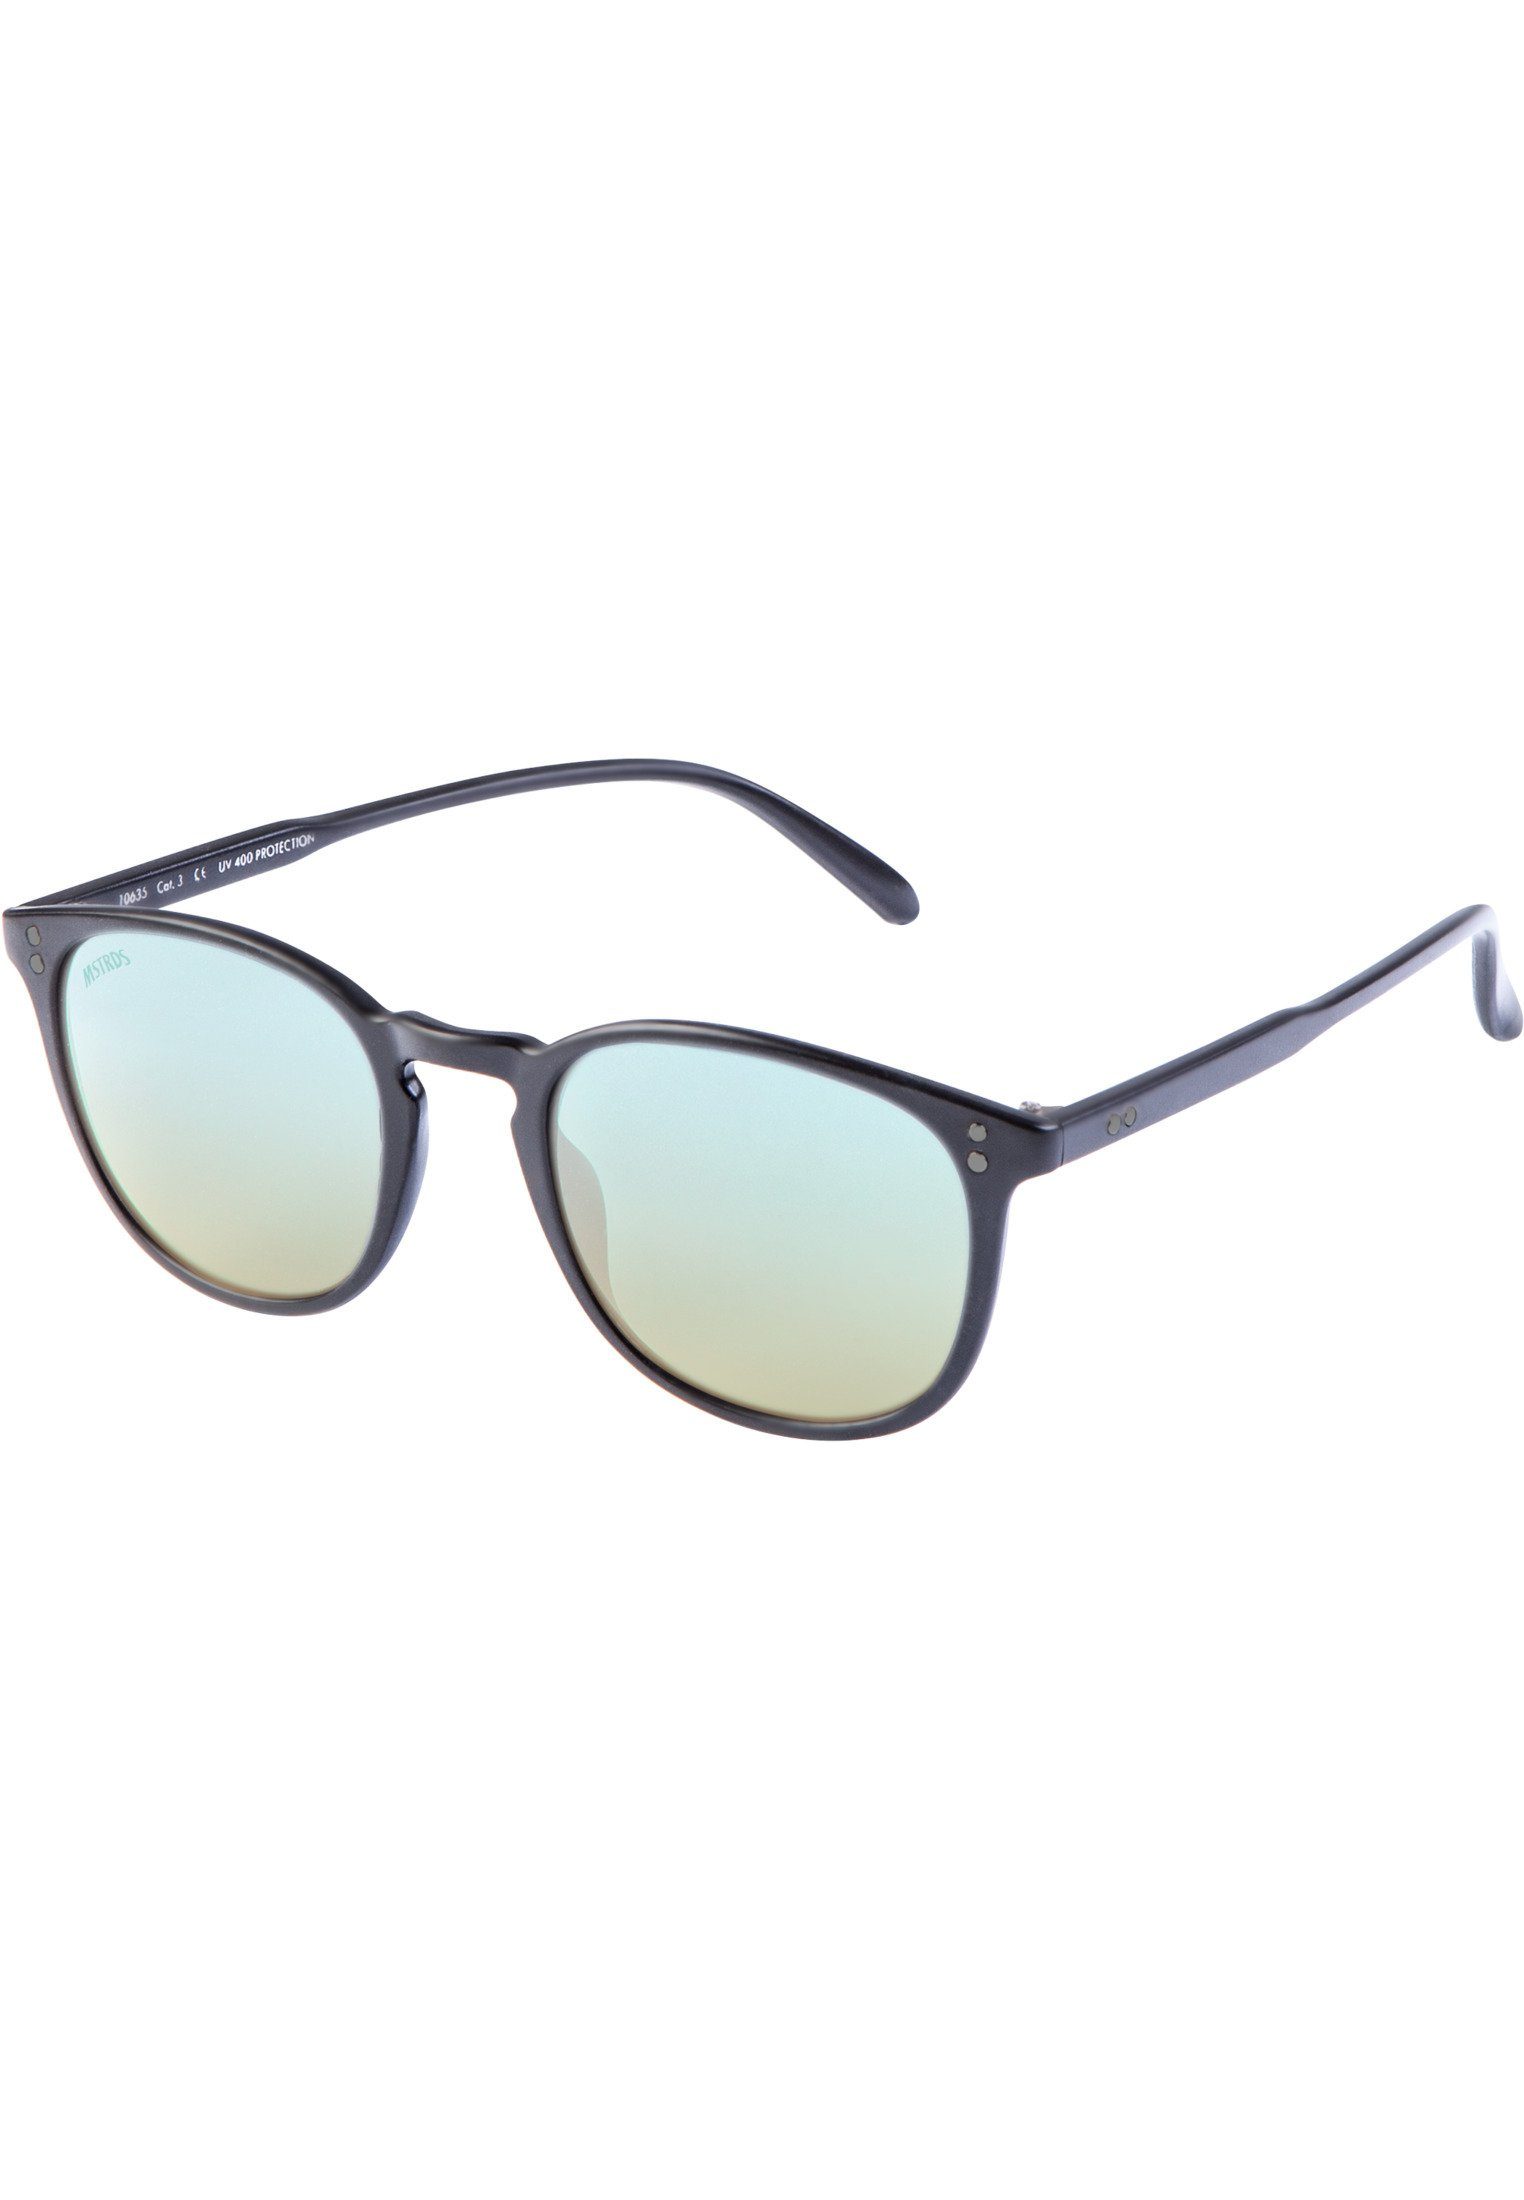 MSTRDS Sonnenbrille Accessoires Sunglasses Youth blk/blue Arthur